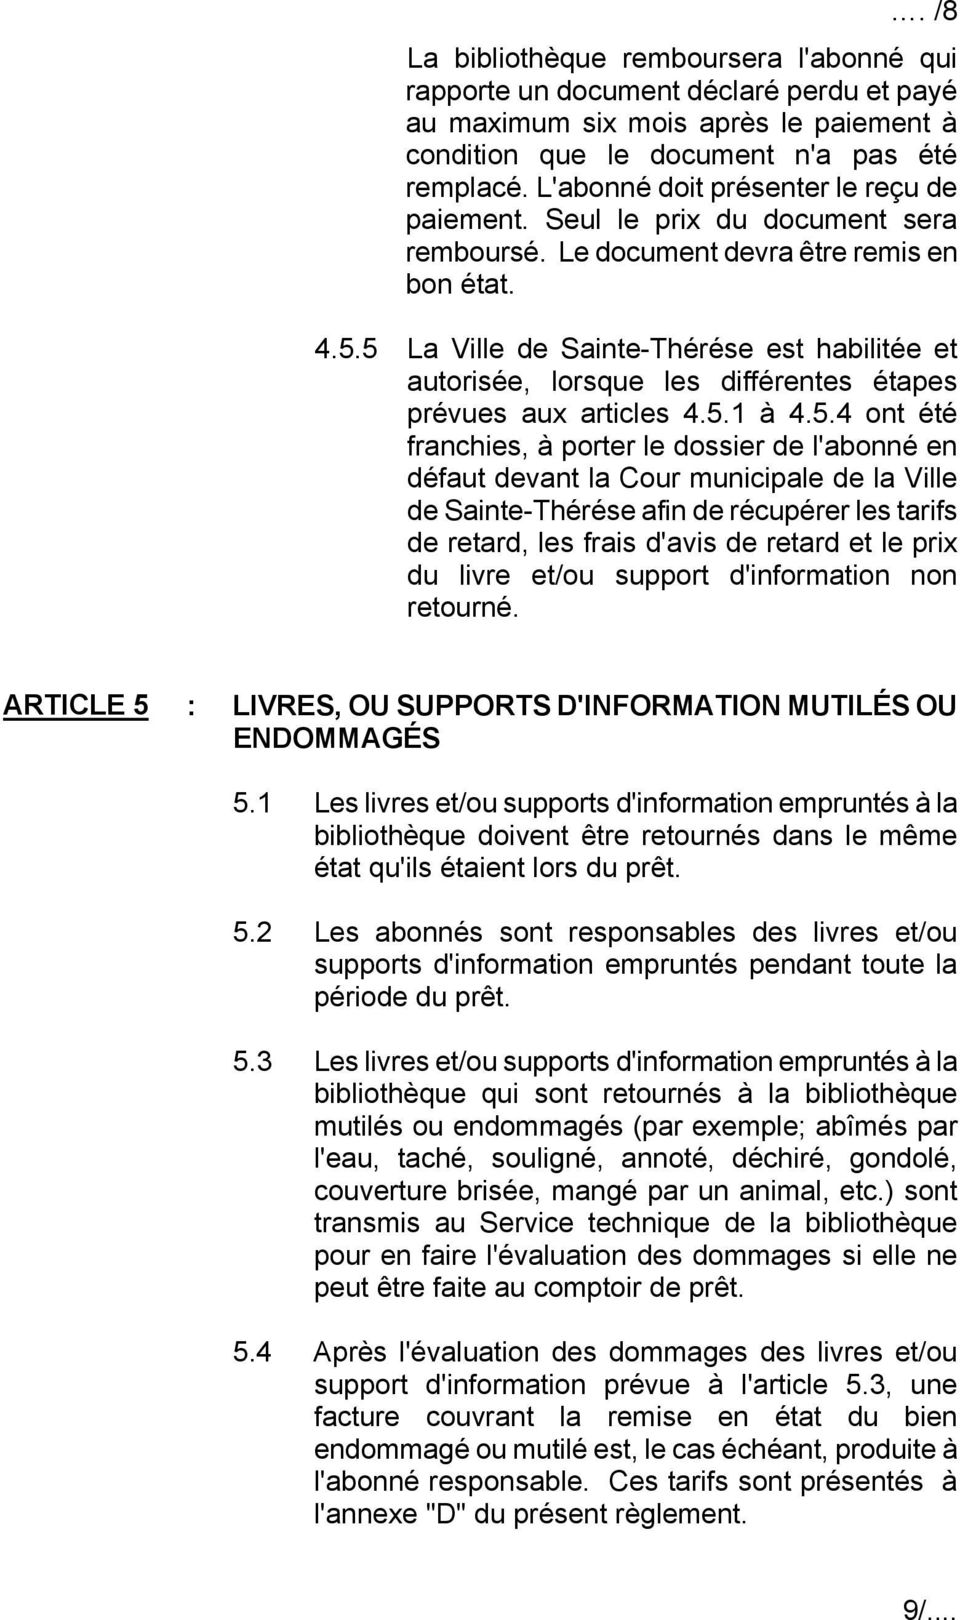 5 La Ville de Sainte-Thérése est habilitée et autorisée, lorsque les différentes étapes prévues aux articles 4.5.1 à 4.5.4 ont été franchies, à porter le dossier de l'abonné en défaut devant la Cour